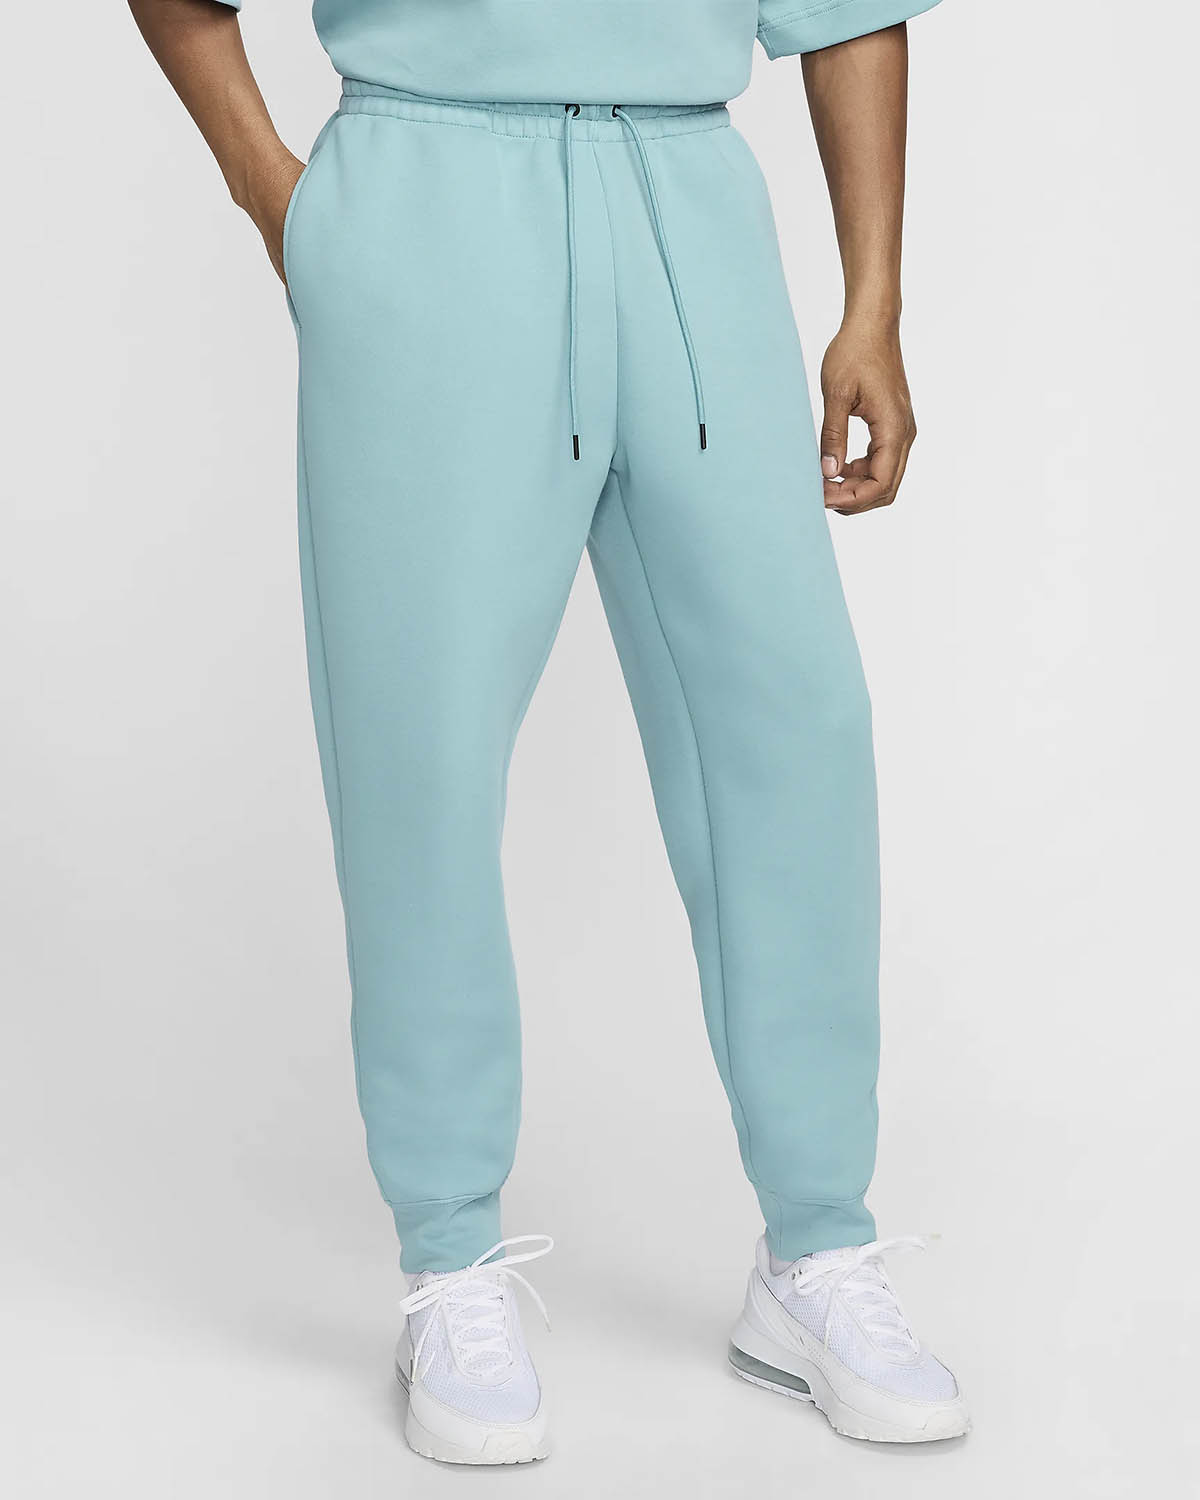 NIke Tech Fleece Pants Denim Turquoise